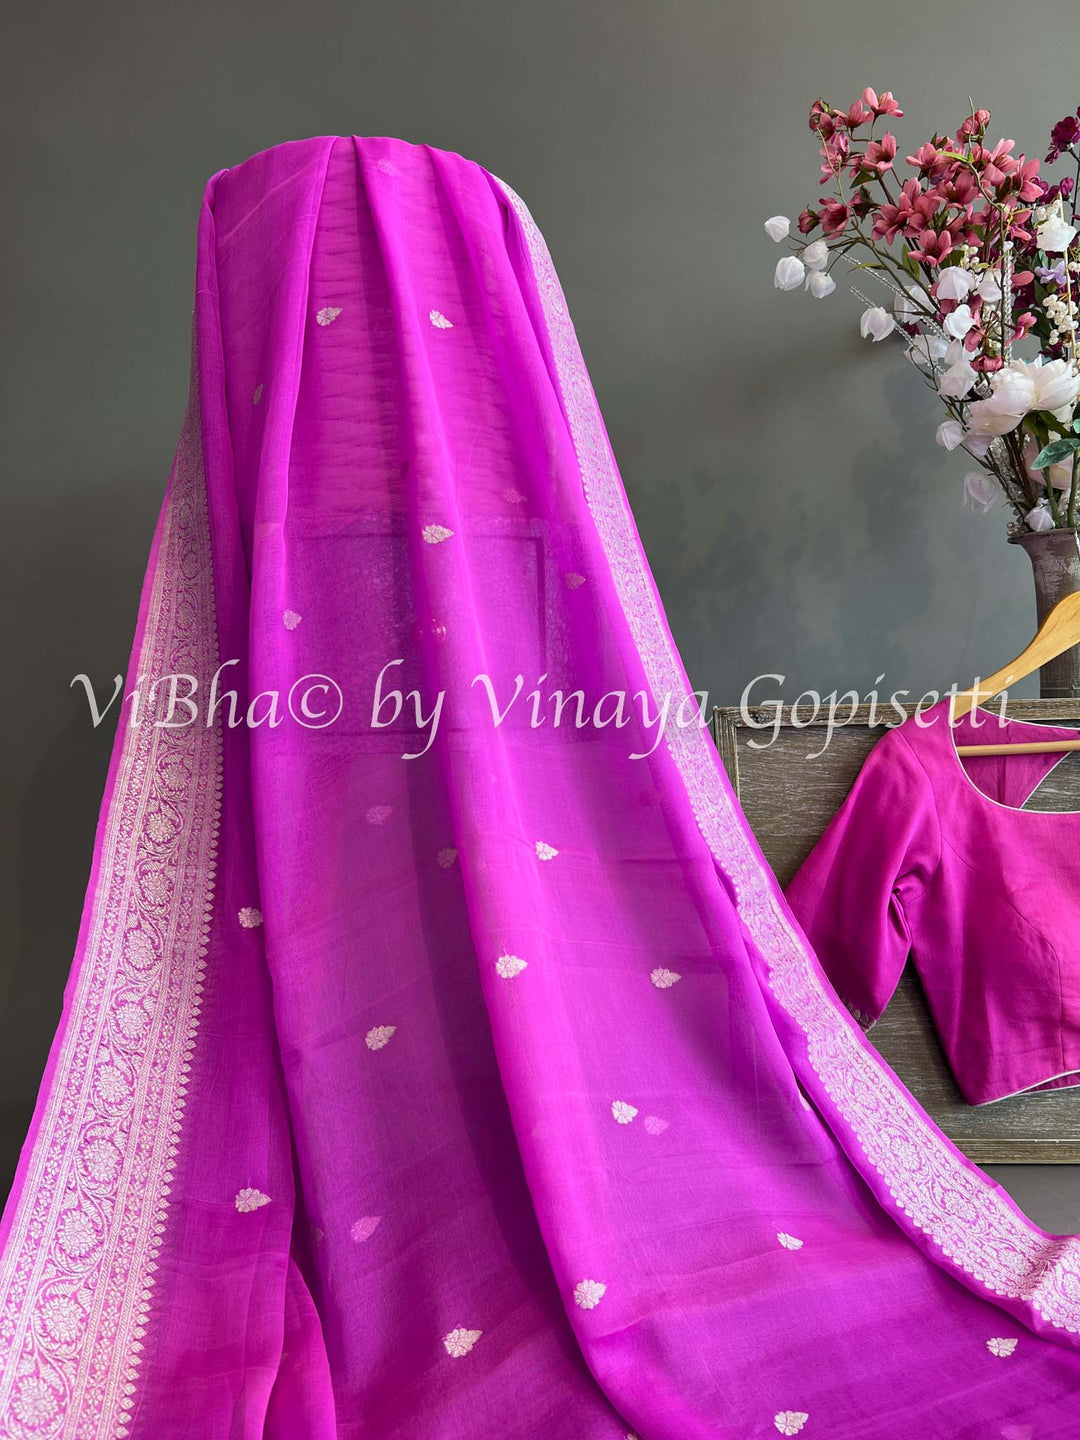 Pink Banarasi Chiffon Saree and Blouse.